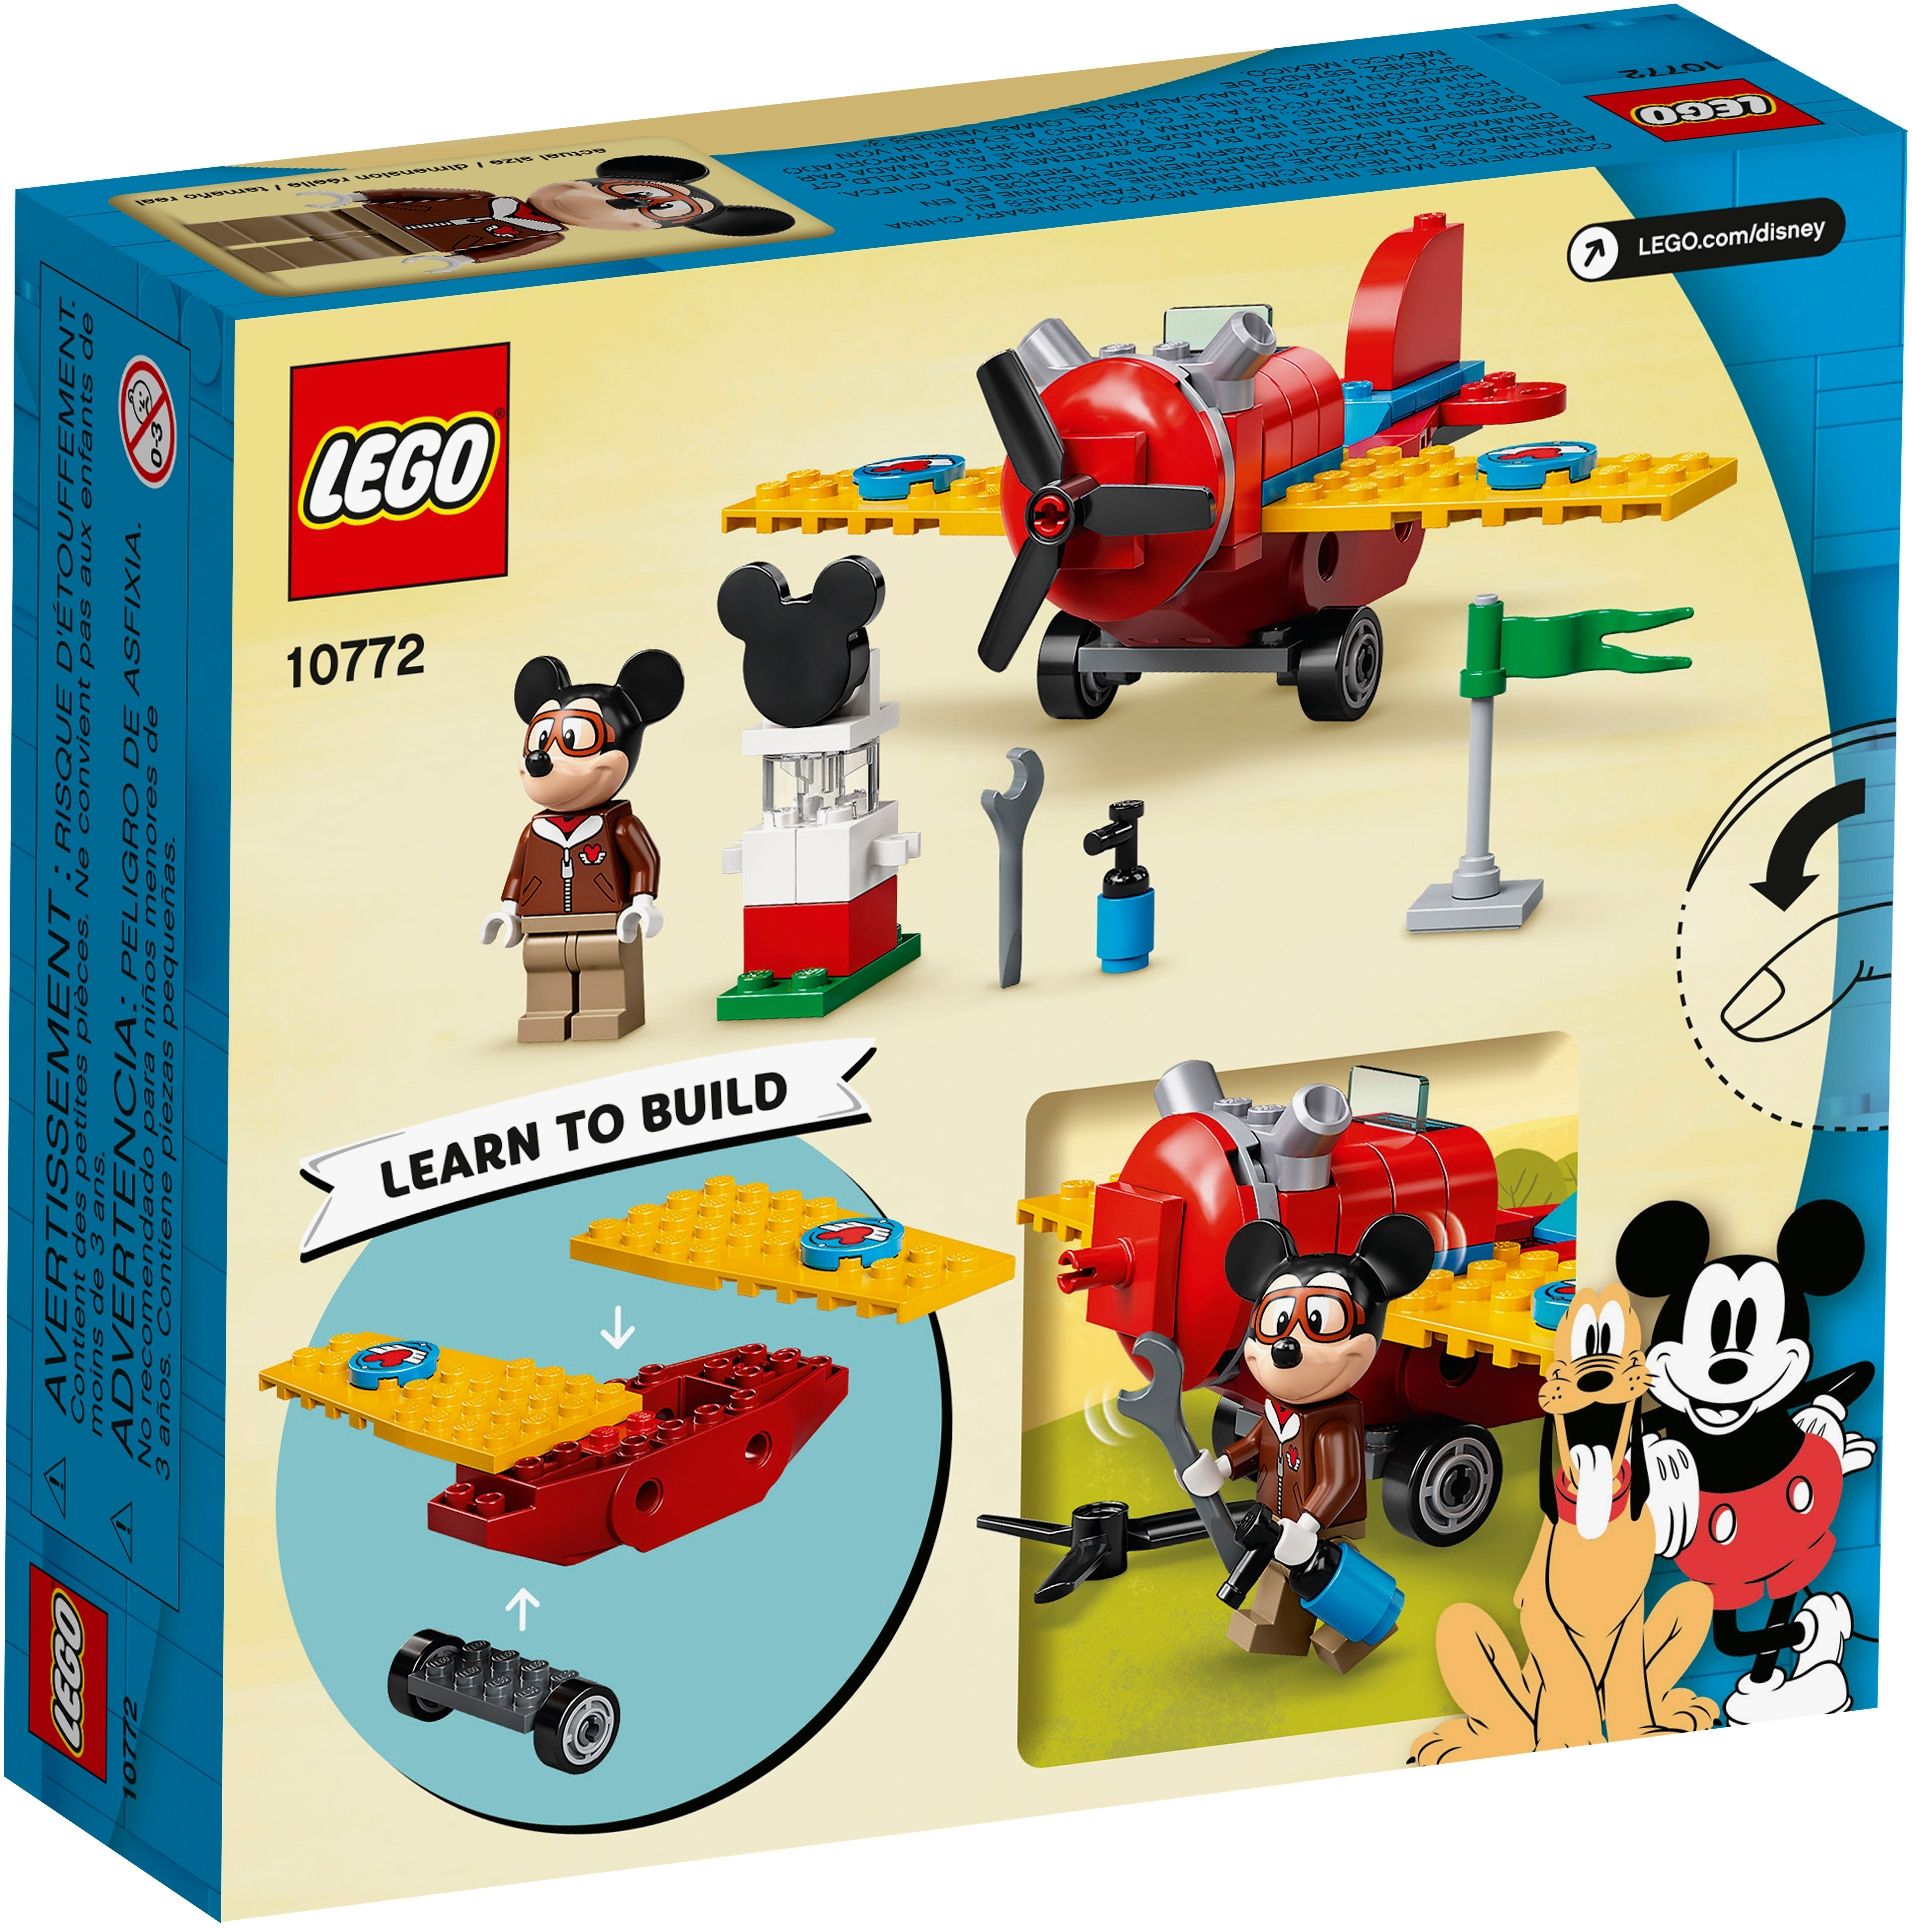 LEGO Disney 10772 Mickys Propellerflugzeug LEGO_10772_alt6.jpg